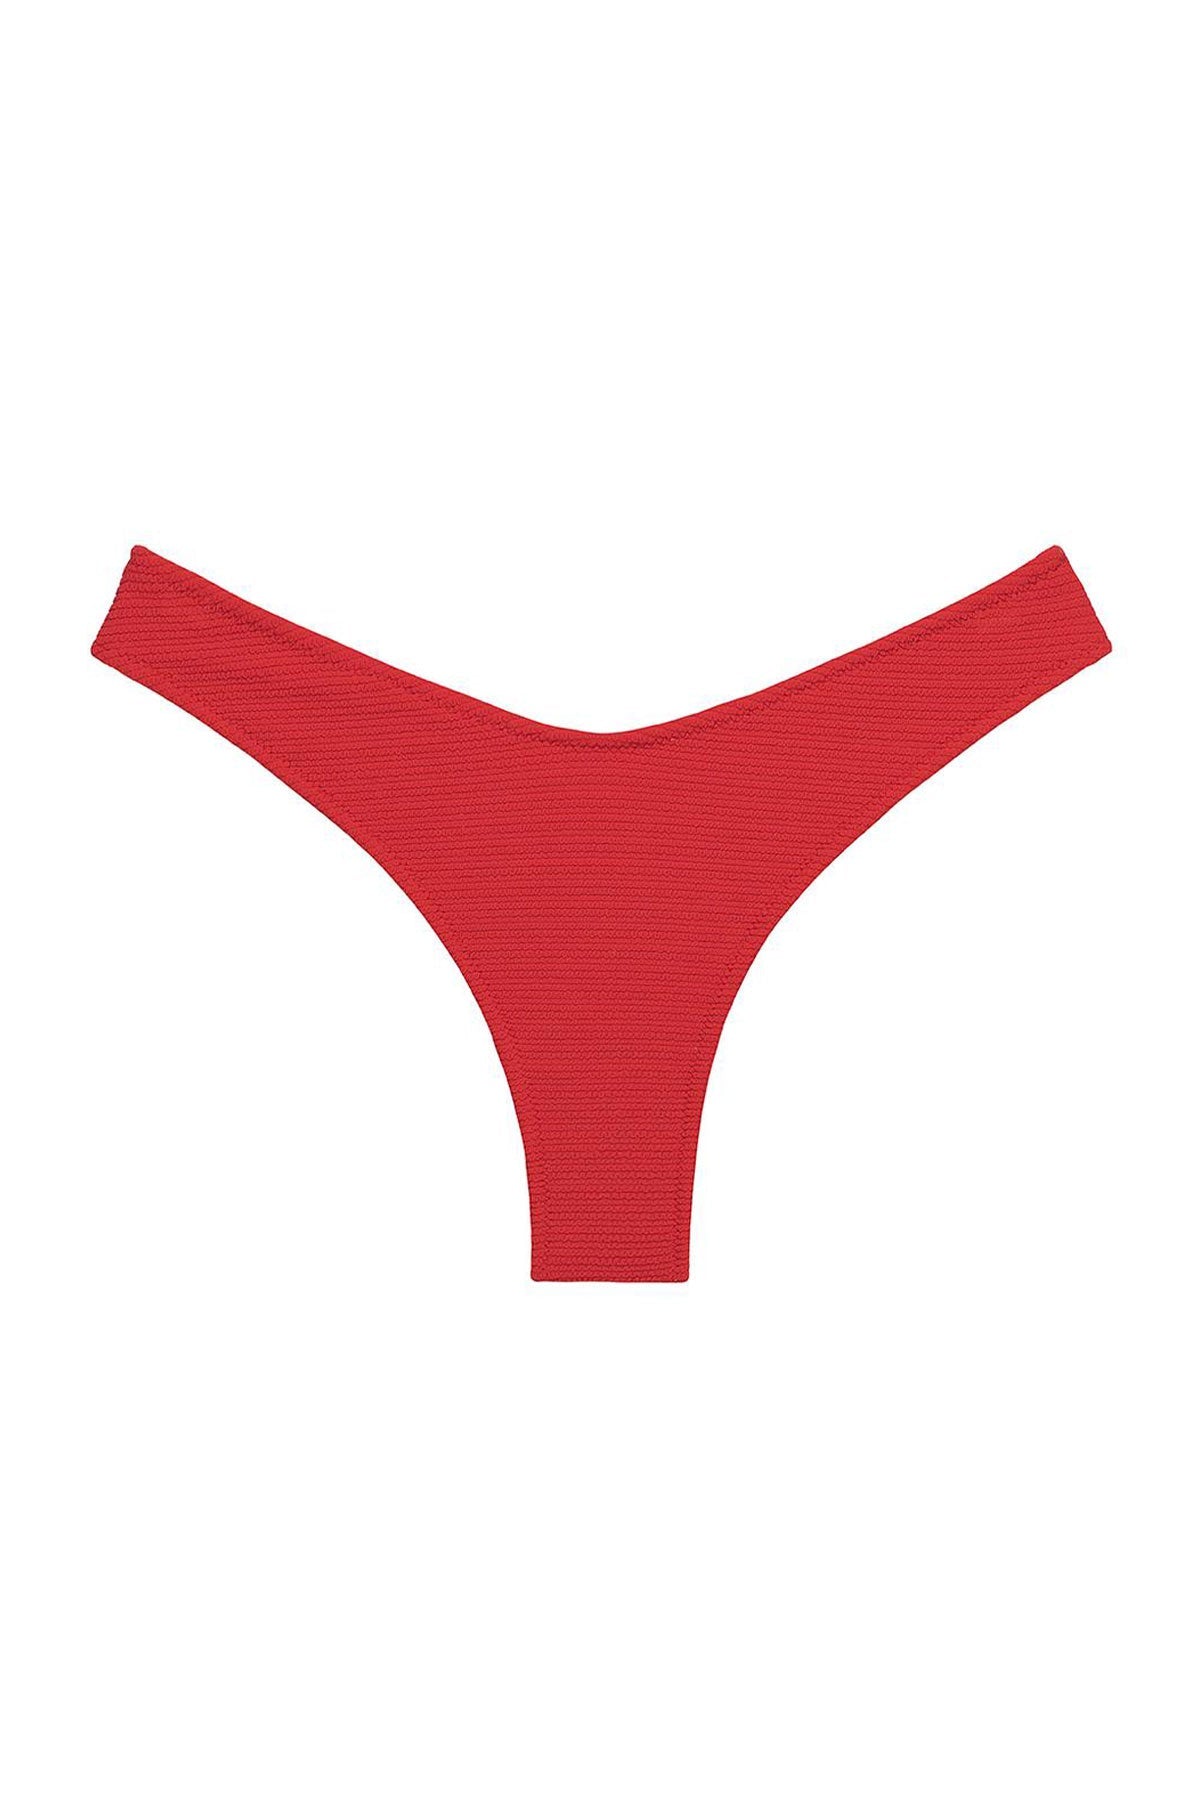 Crimson Micro Scrunch Lulu (Zig Zag Stitch) Bikini Bottom - shop-olivia.com